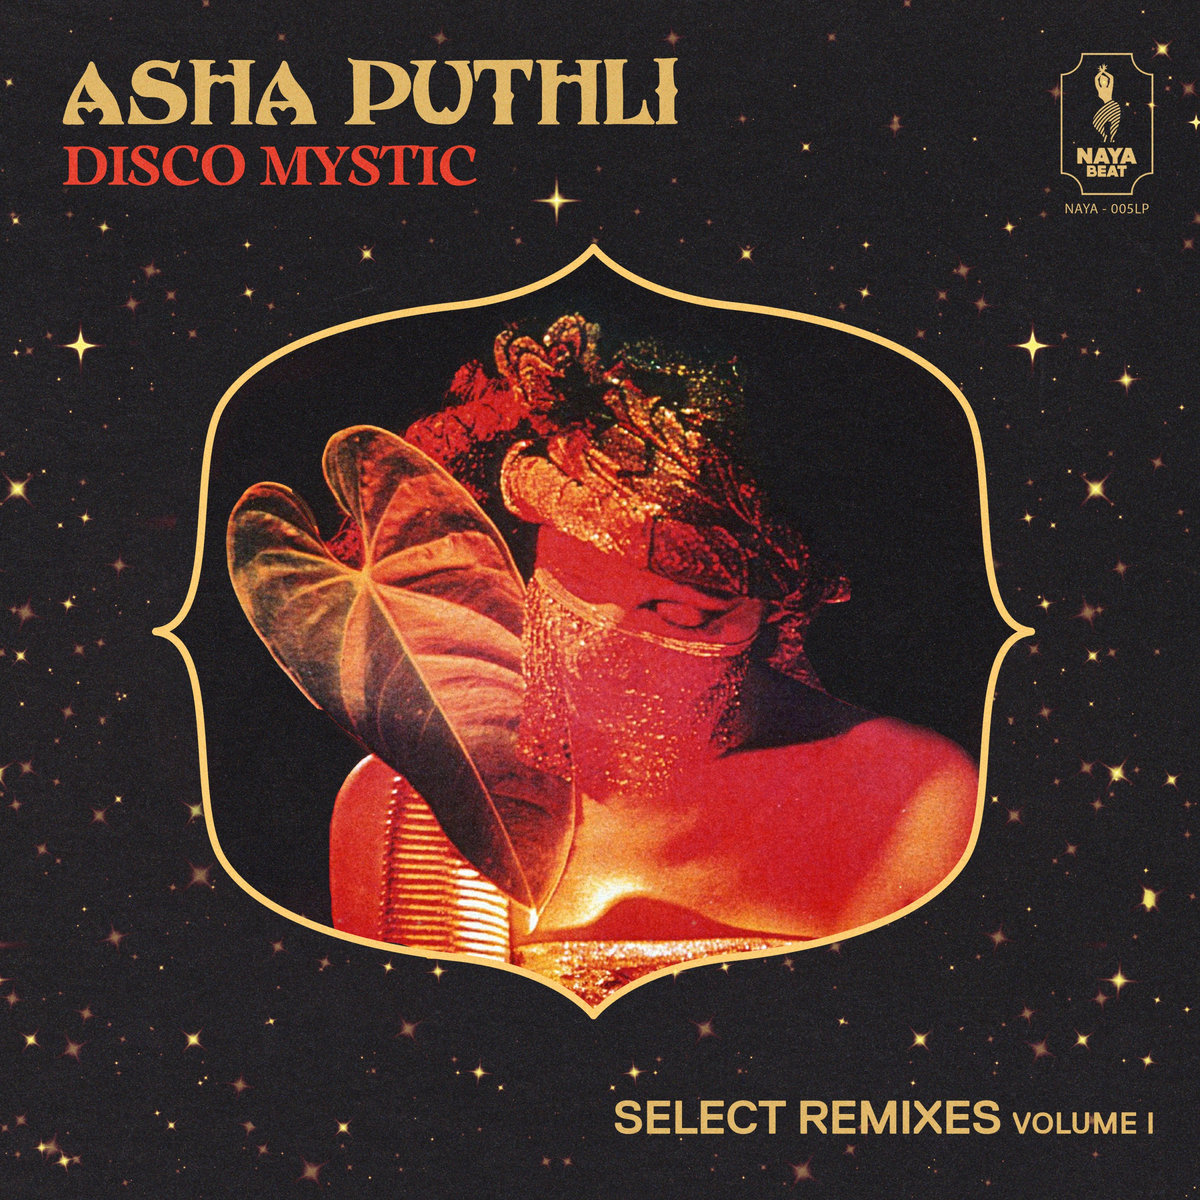 PUTHLI, ASHA - DISCO MYSTIC (SELECT REMIXES VOL.1) - LP